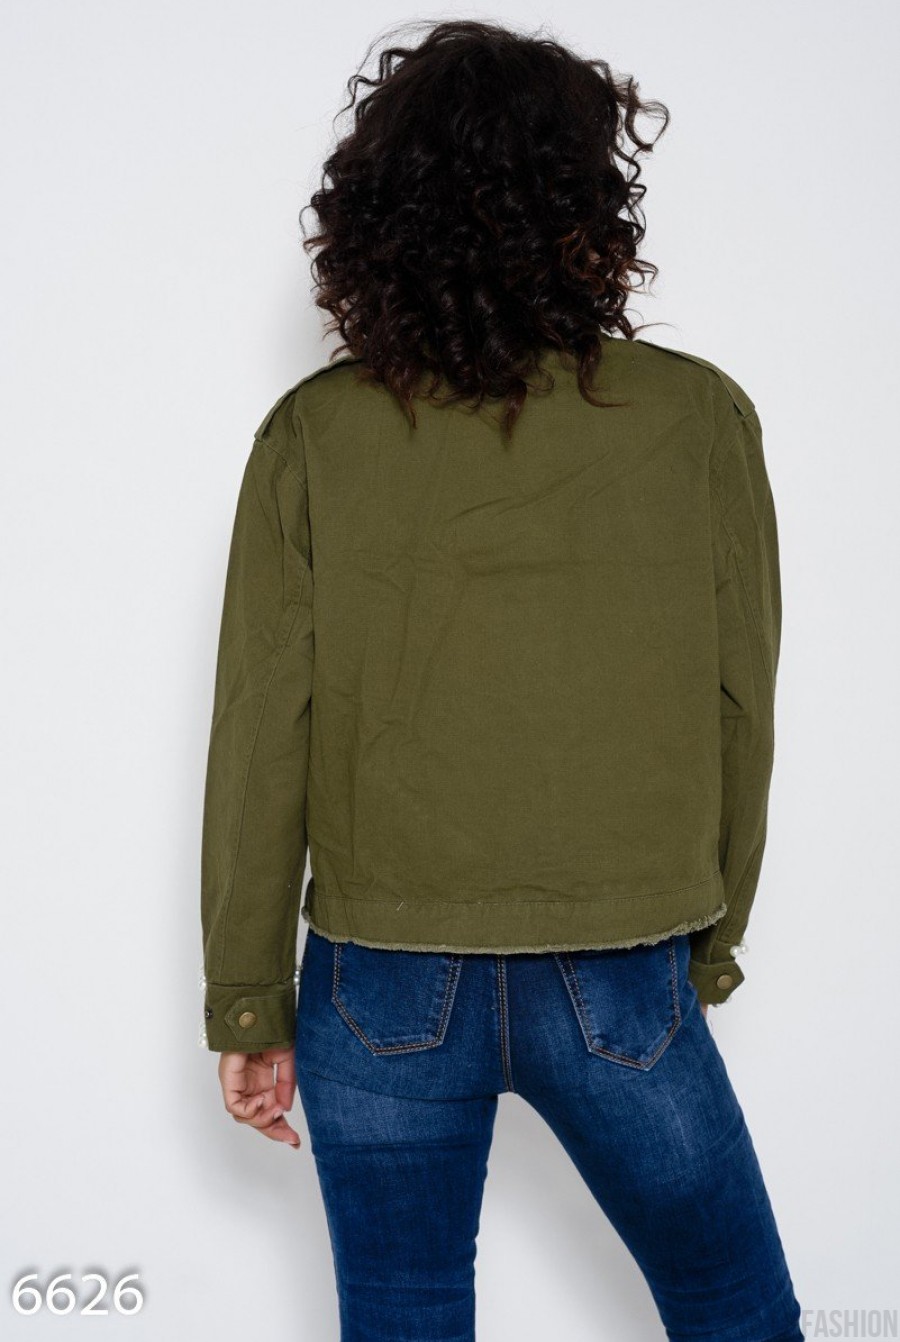 Укороченная джинсовая куртка цвета хаки с бахромой, молнией на воротнике и инкрустацией жемчужинами- Фото 4